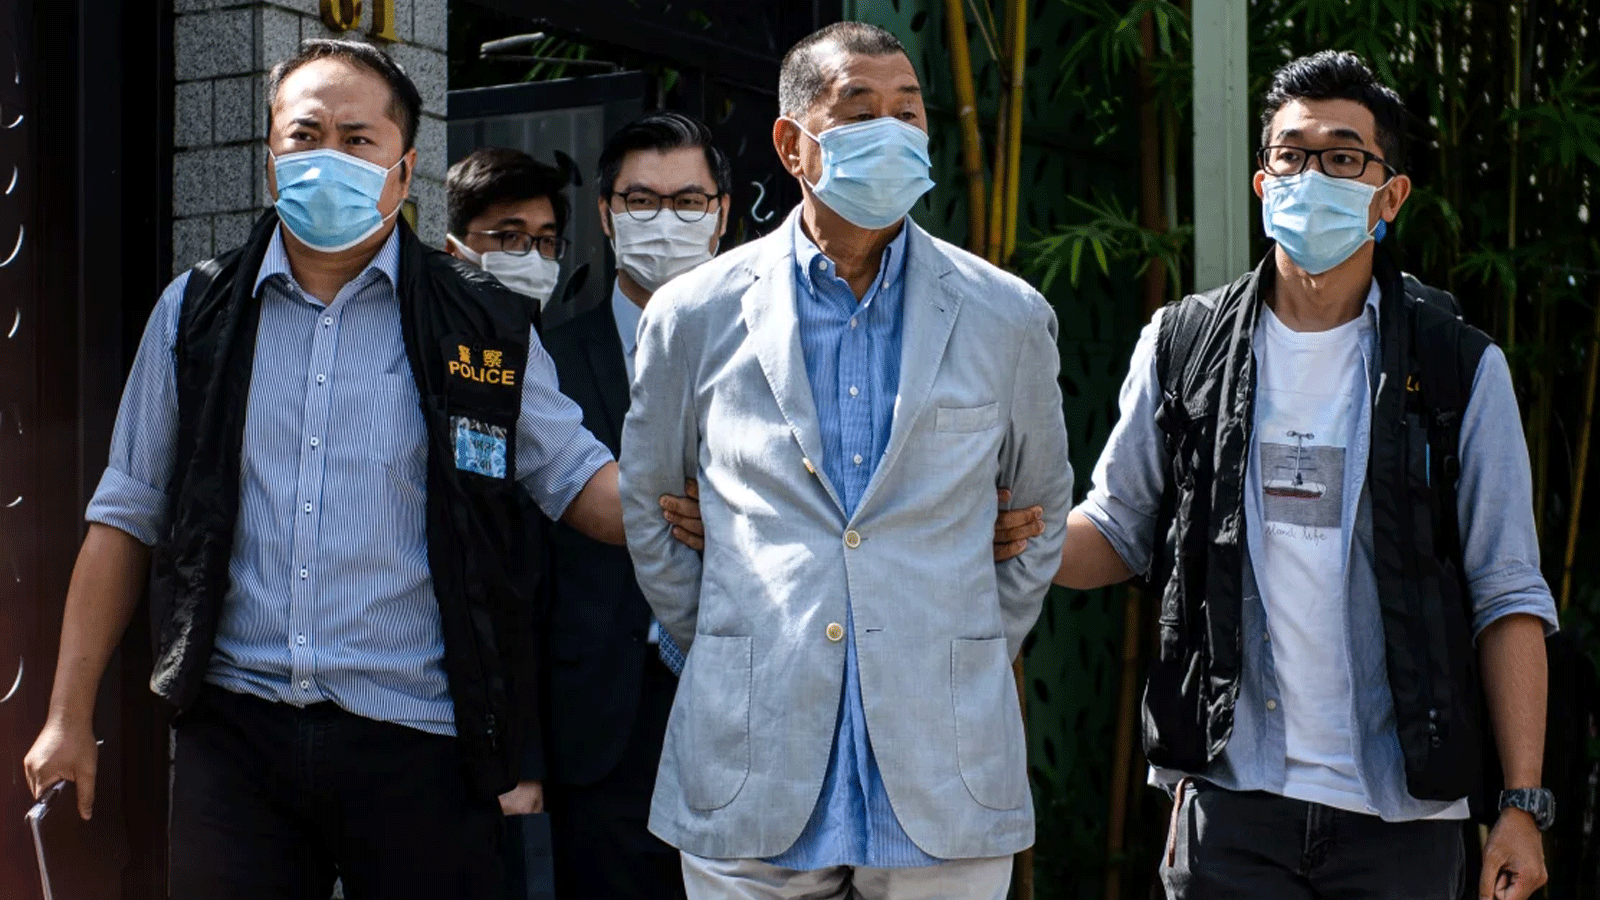 الشرطة تقود قطب الإعلام المؤيد للديمقراطية في هونغ كونغ جيمي لاي بعيدًا عن منزله بعد اعتقاله بموجب قانون الأمن القومي في هونغ كونغ في 10 أغسطس(آب) 2020